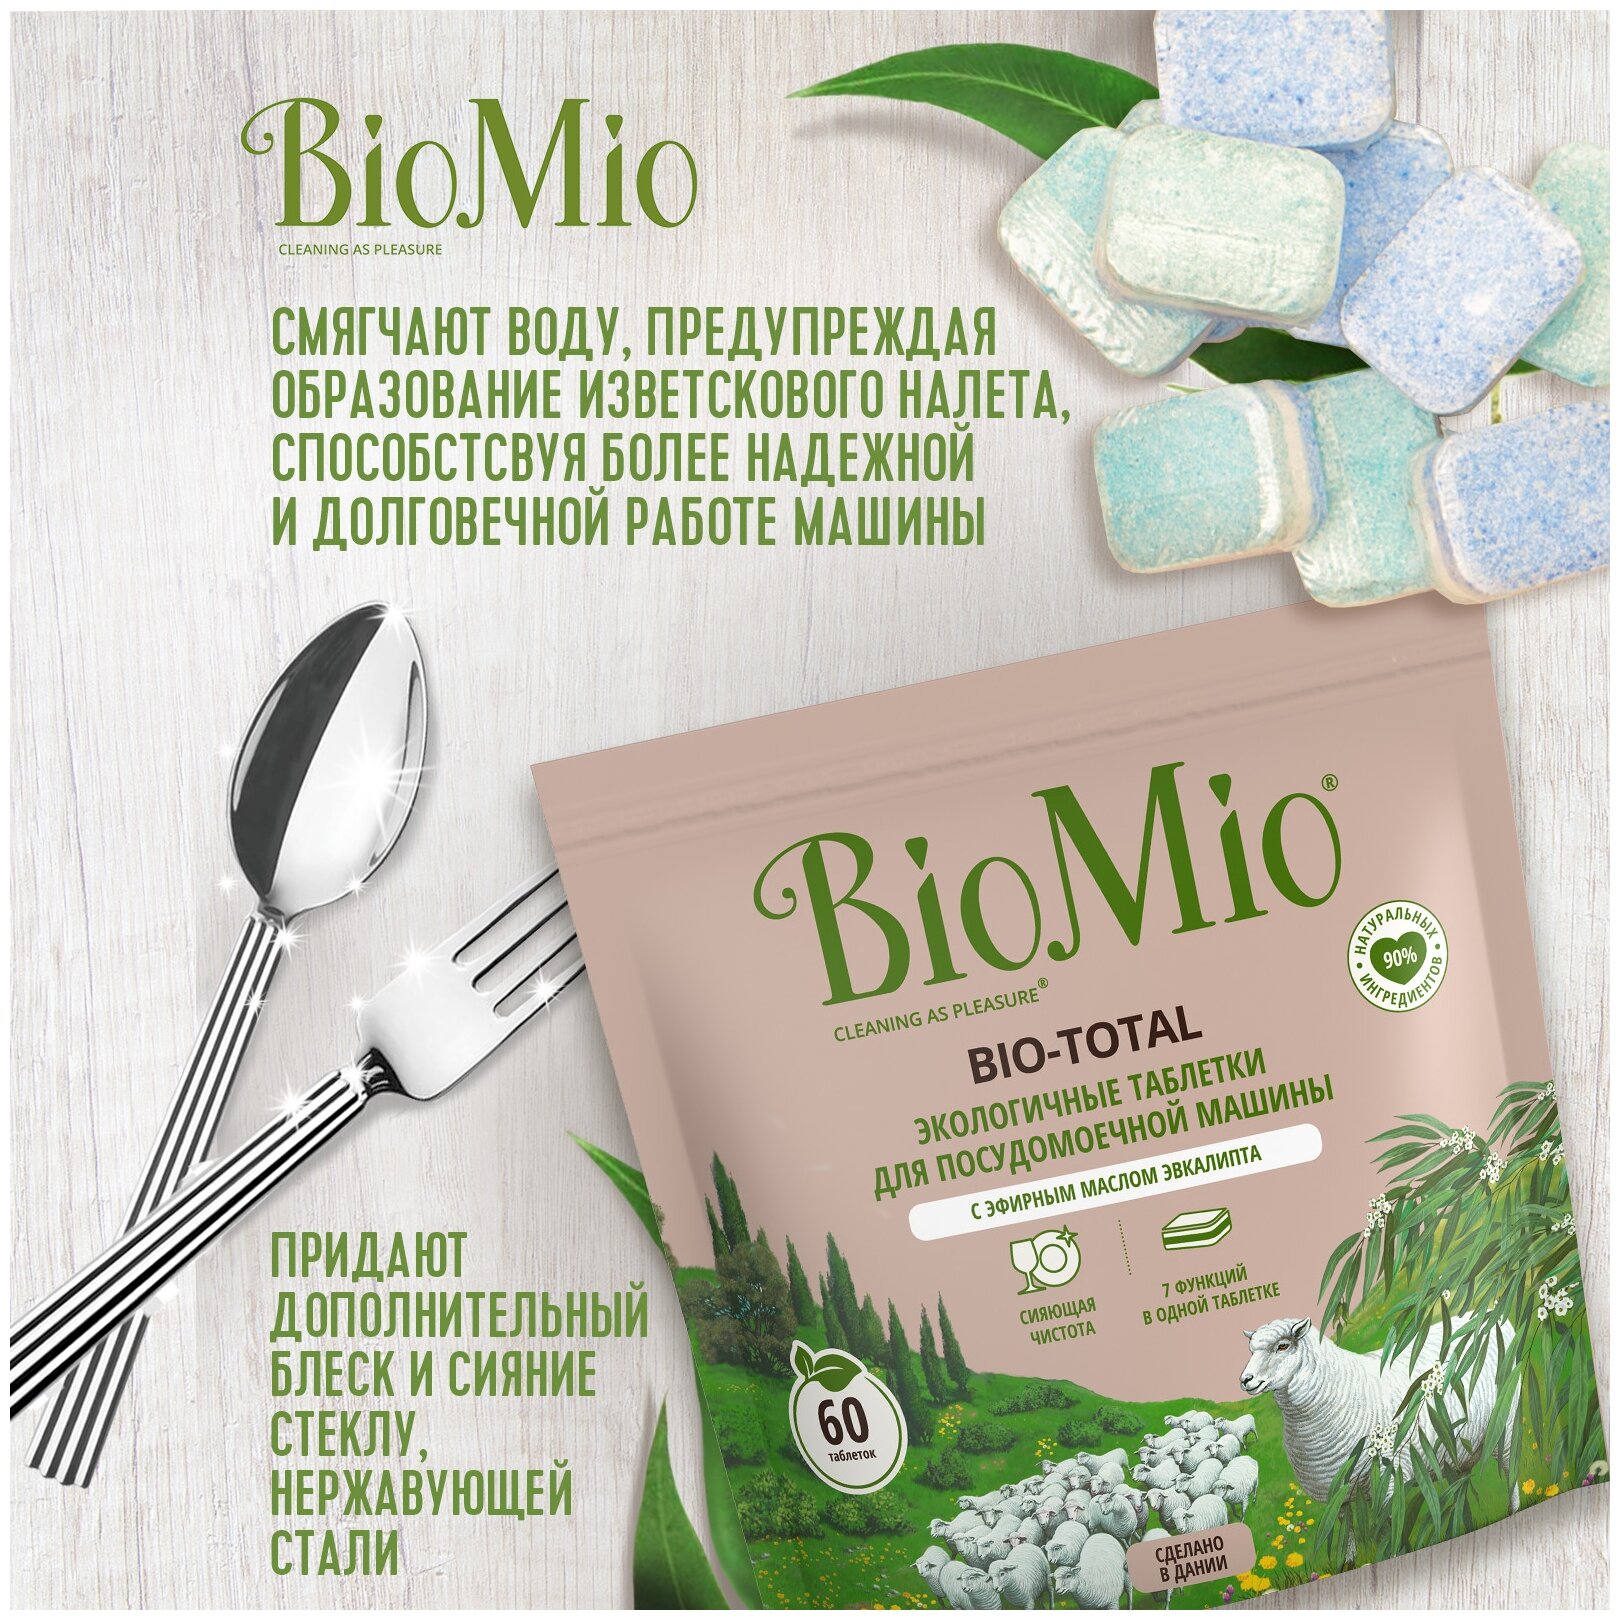 Таблетки для посудомоечной машины BioMio BIO-TOTAL 7-в-1 с эфирным маслом эвкалипта, 60 шт